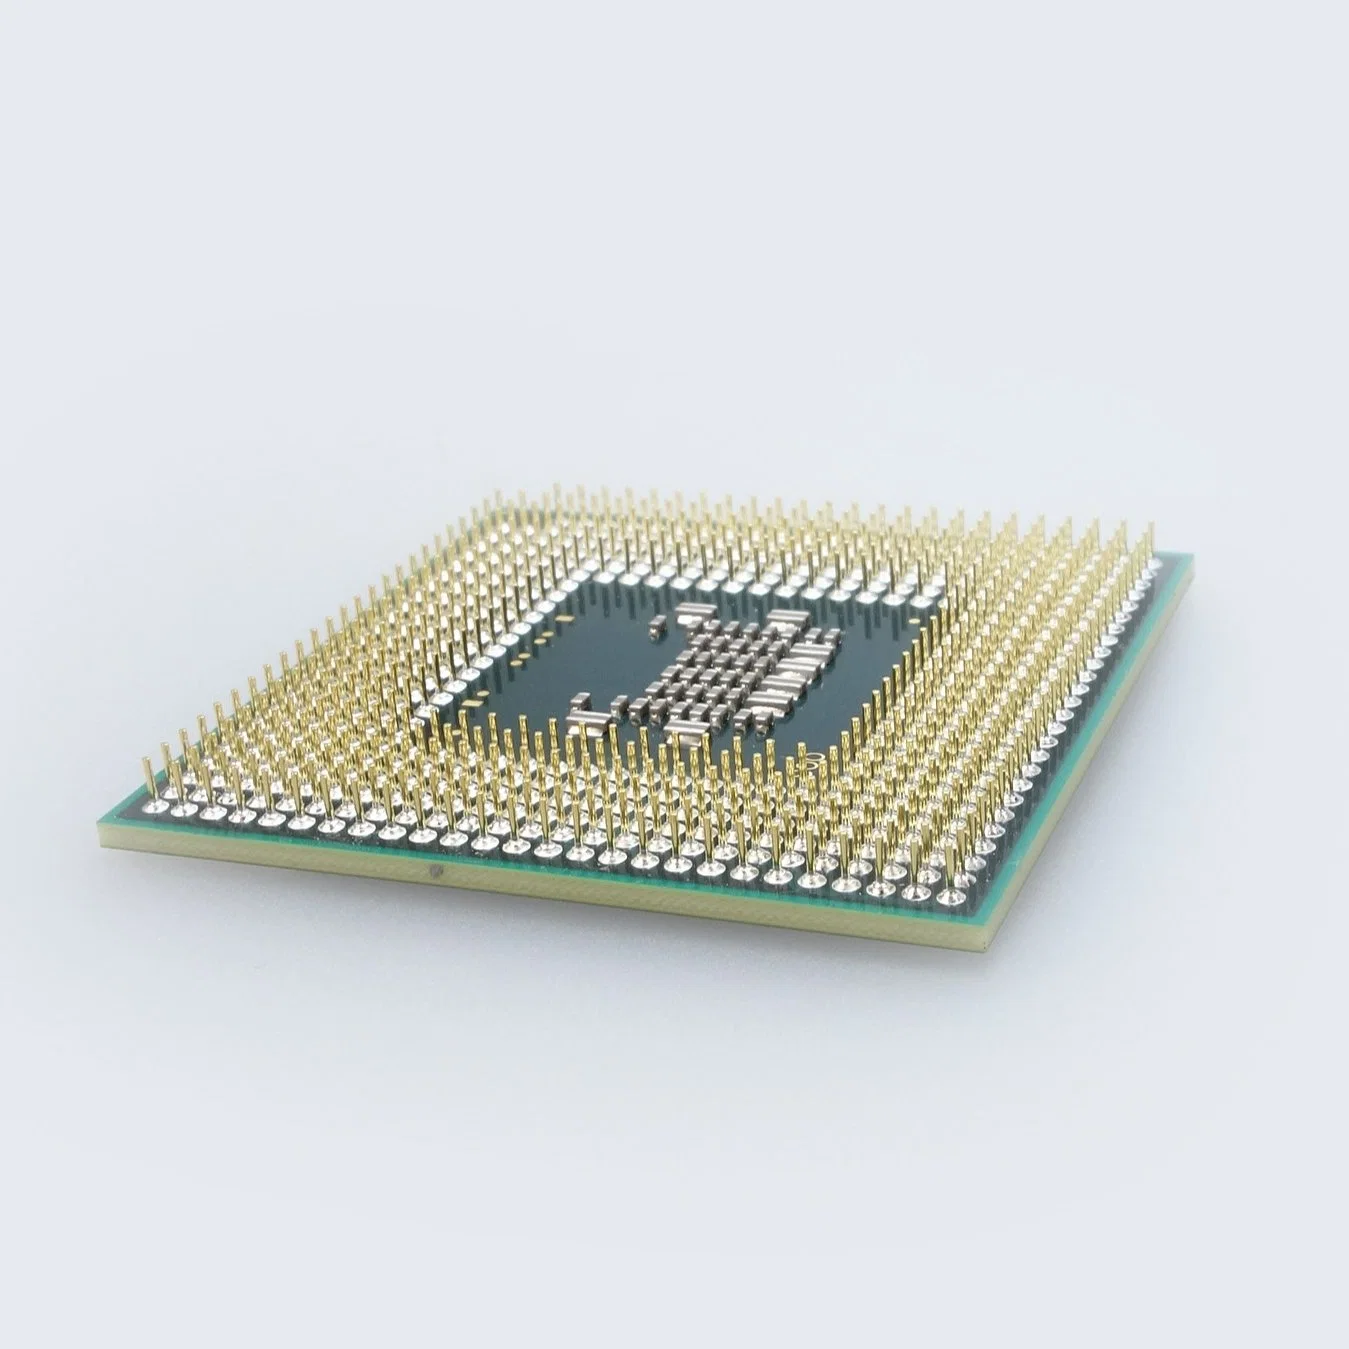 Threadripper Threadtearer Pro Server Procesadores CPU 5975wx 5995wx para Wr80 Wr80e la placa base procesador del servidor